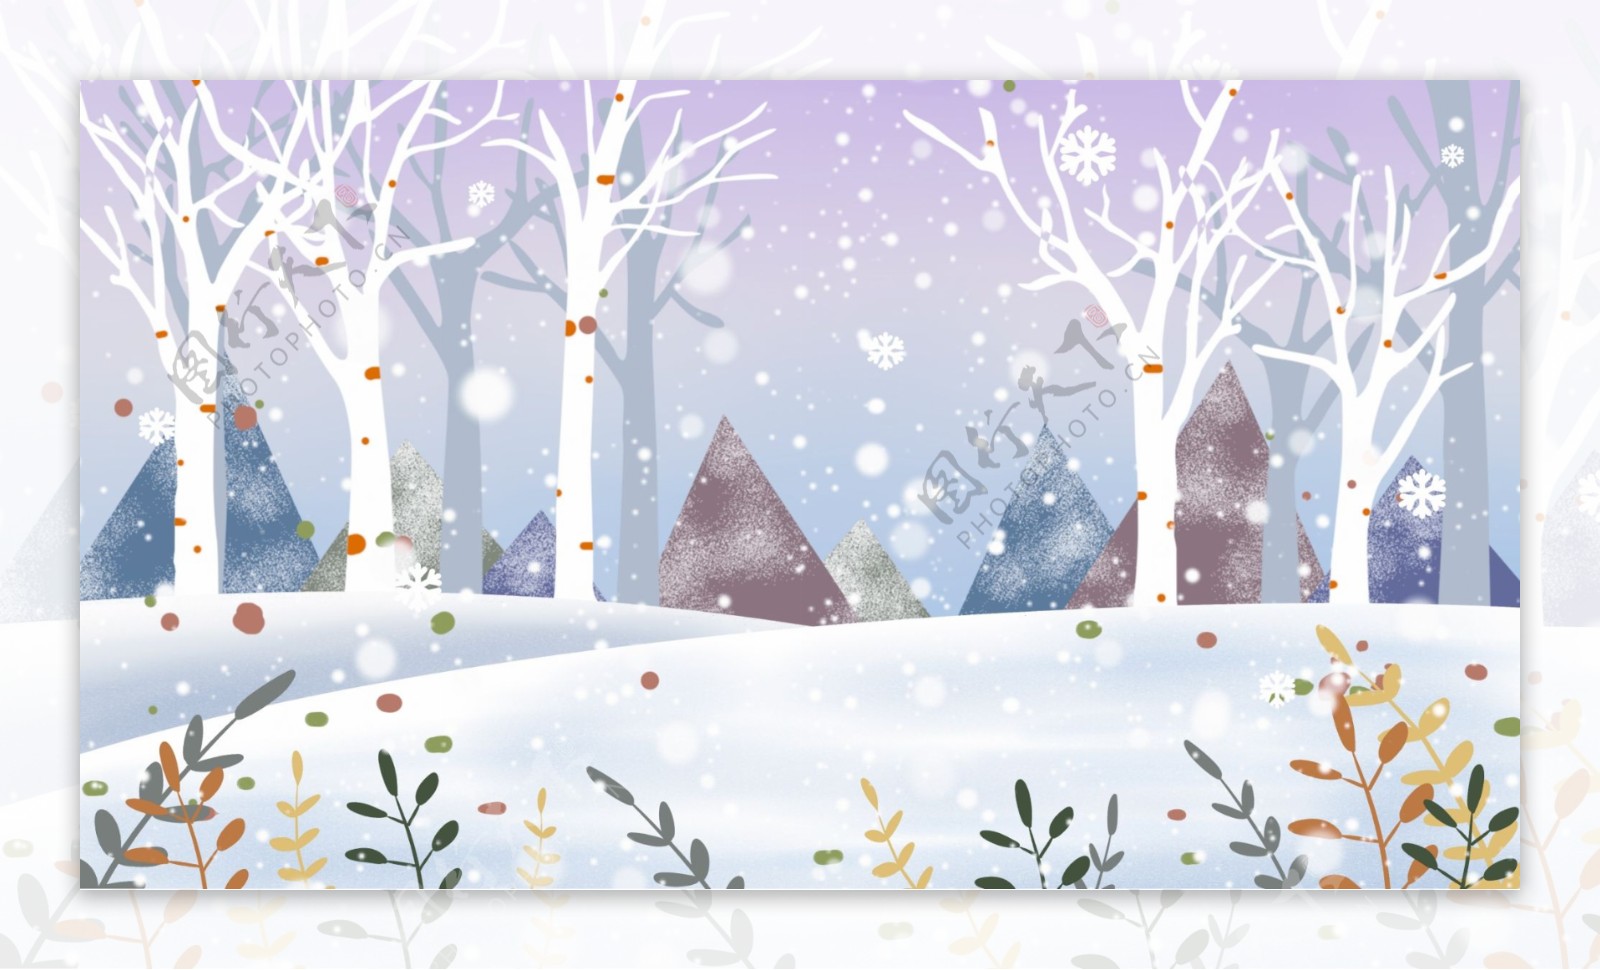 童话风卡通冬季白桦林背景设计